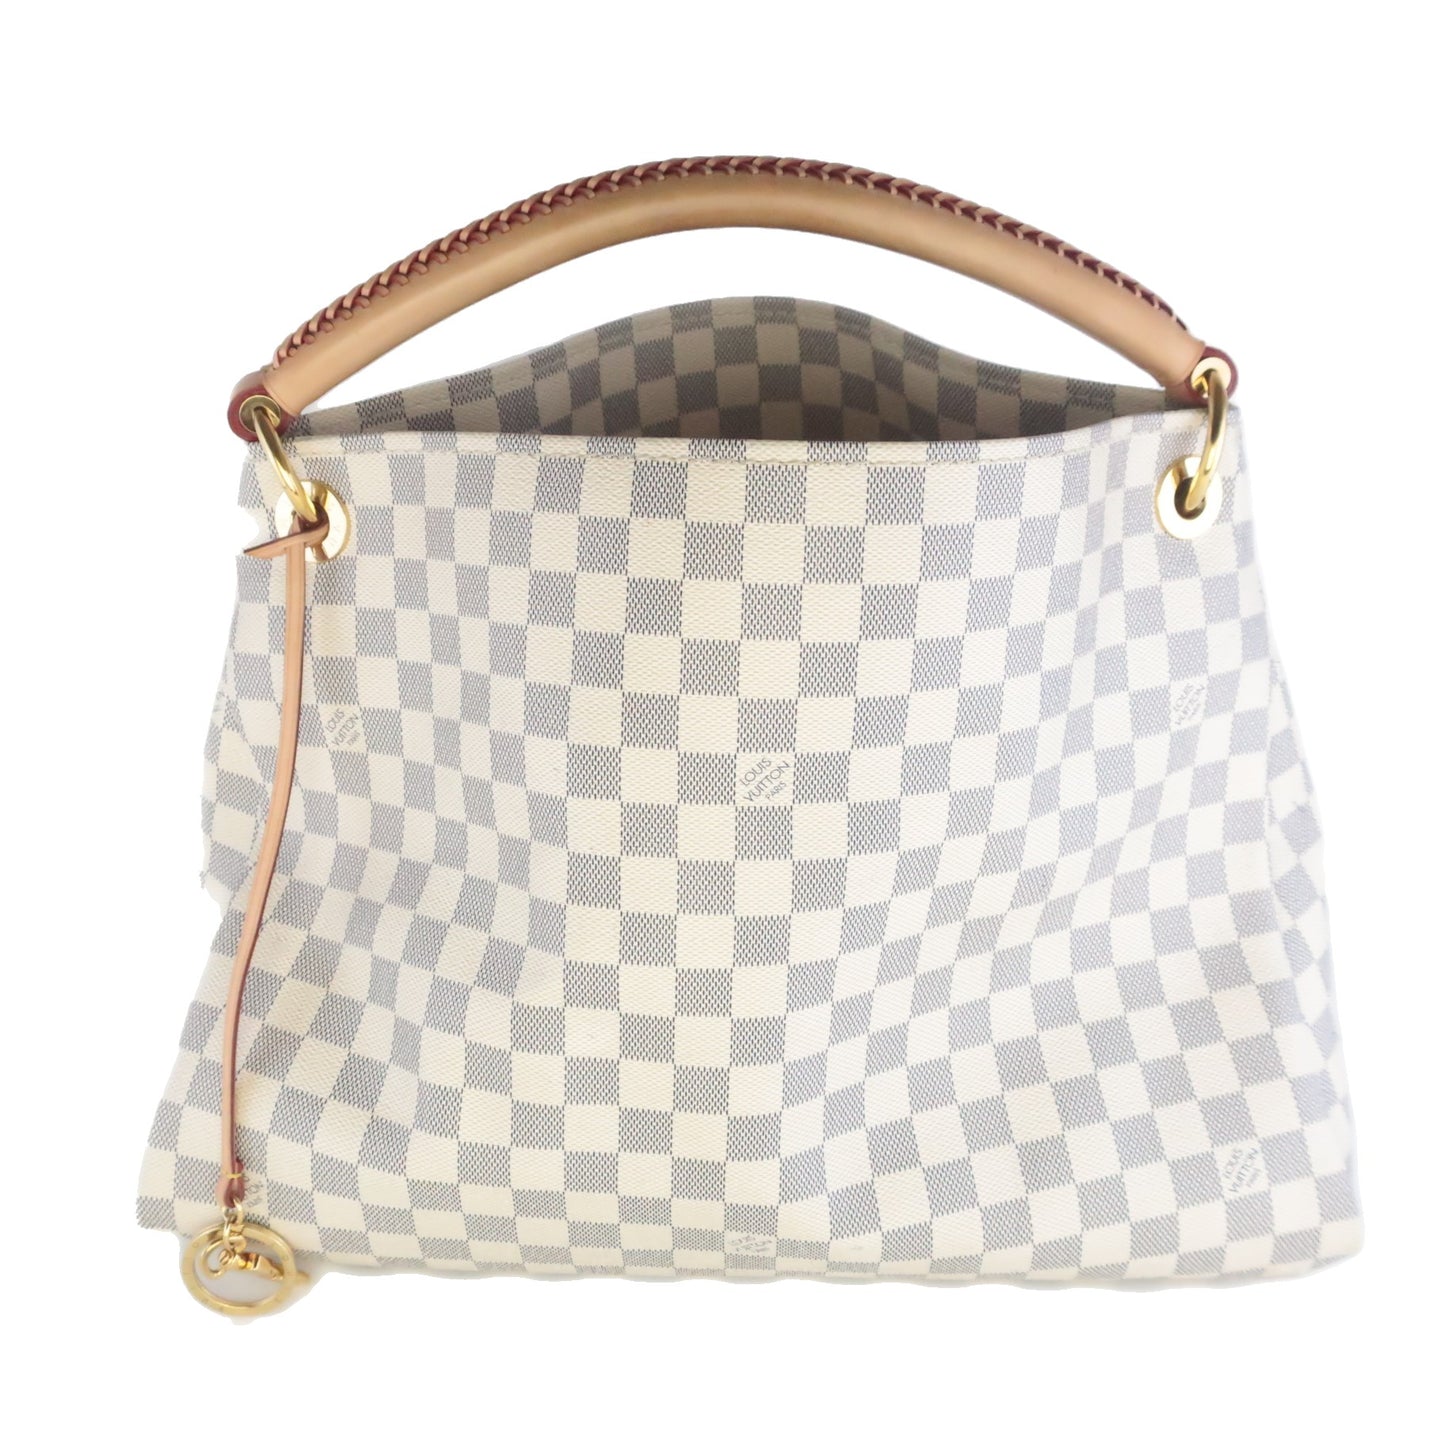 Louis Vuitton - Artsy mm - DaiMer Azur Shoulder Bag